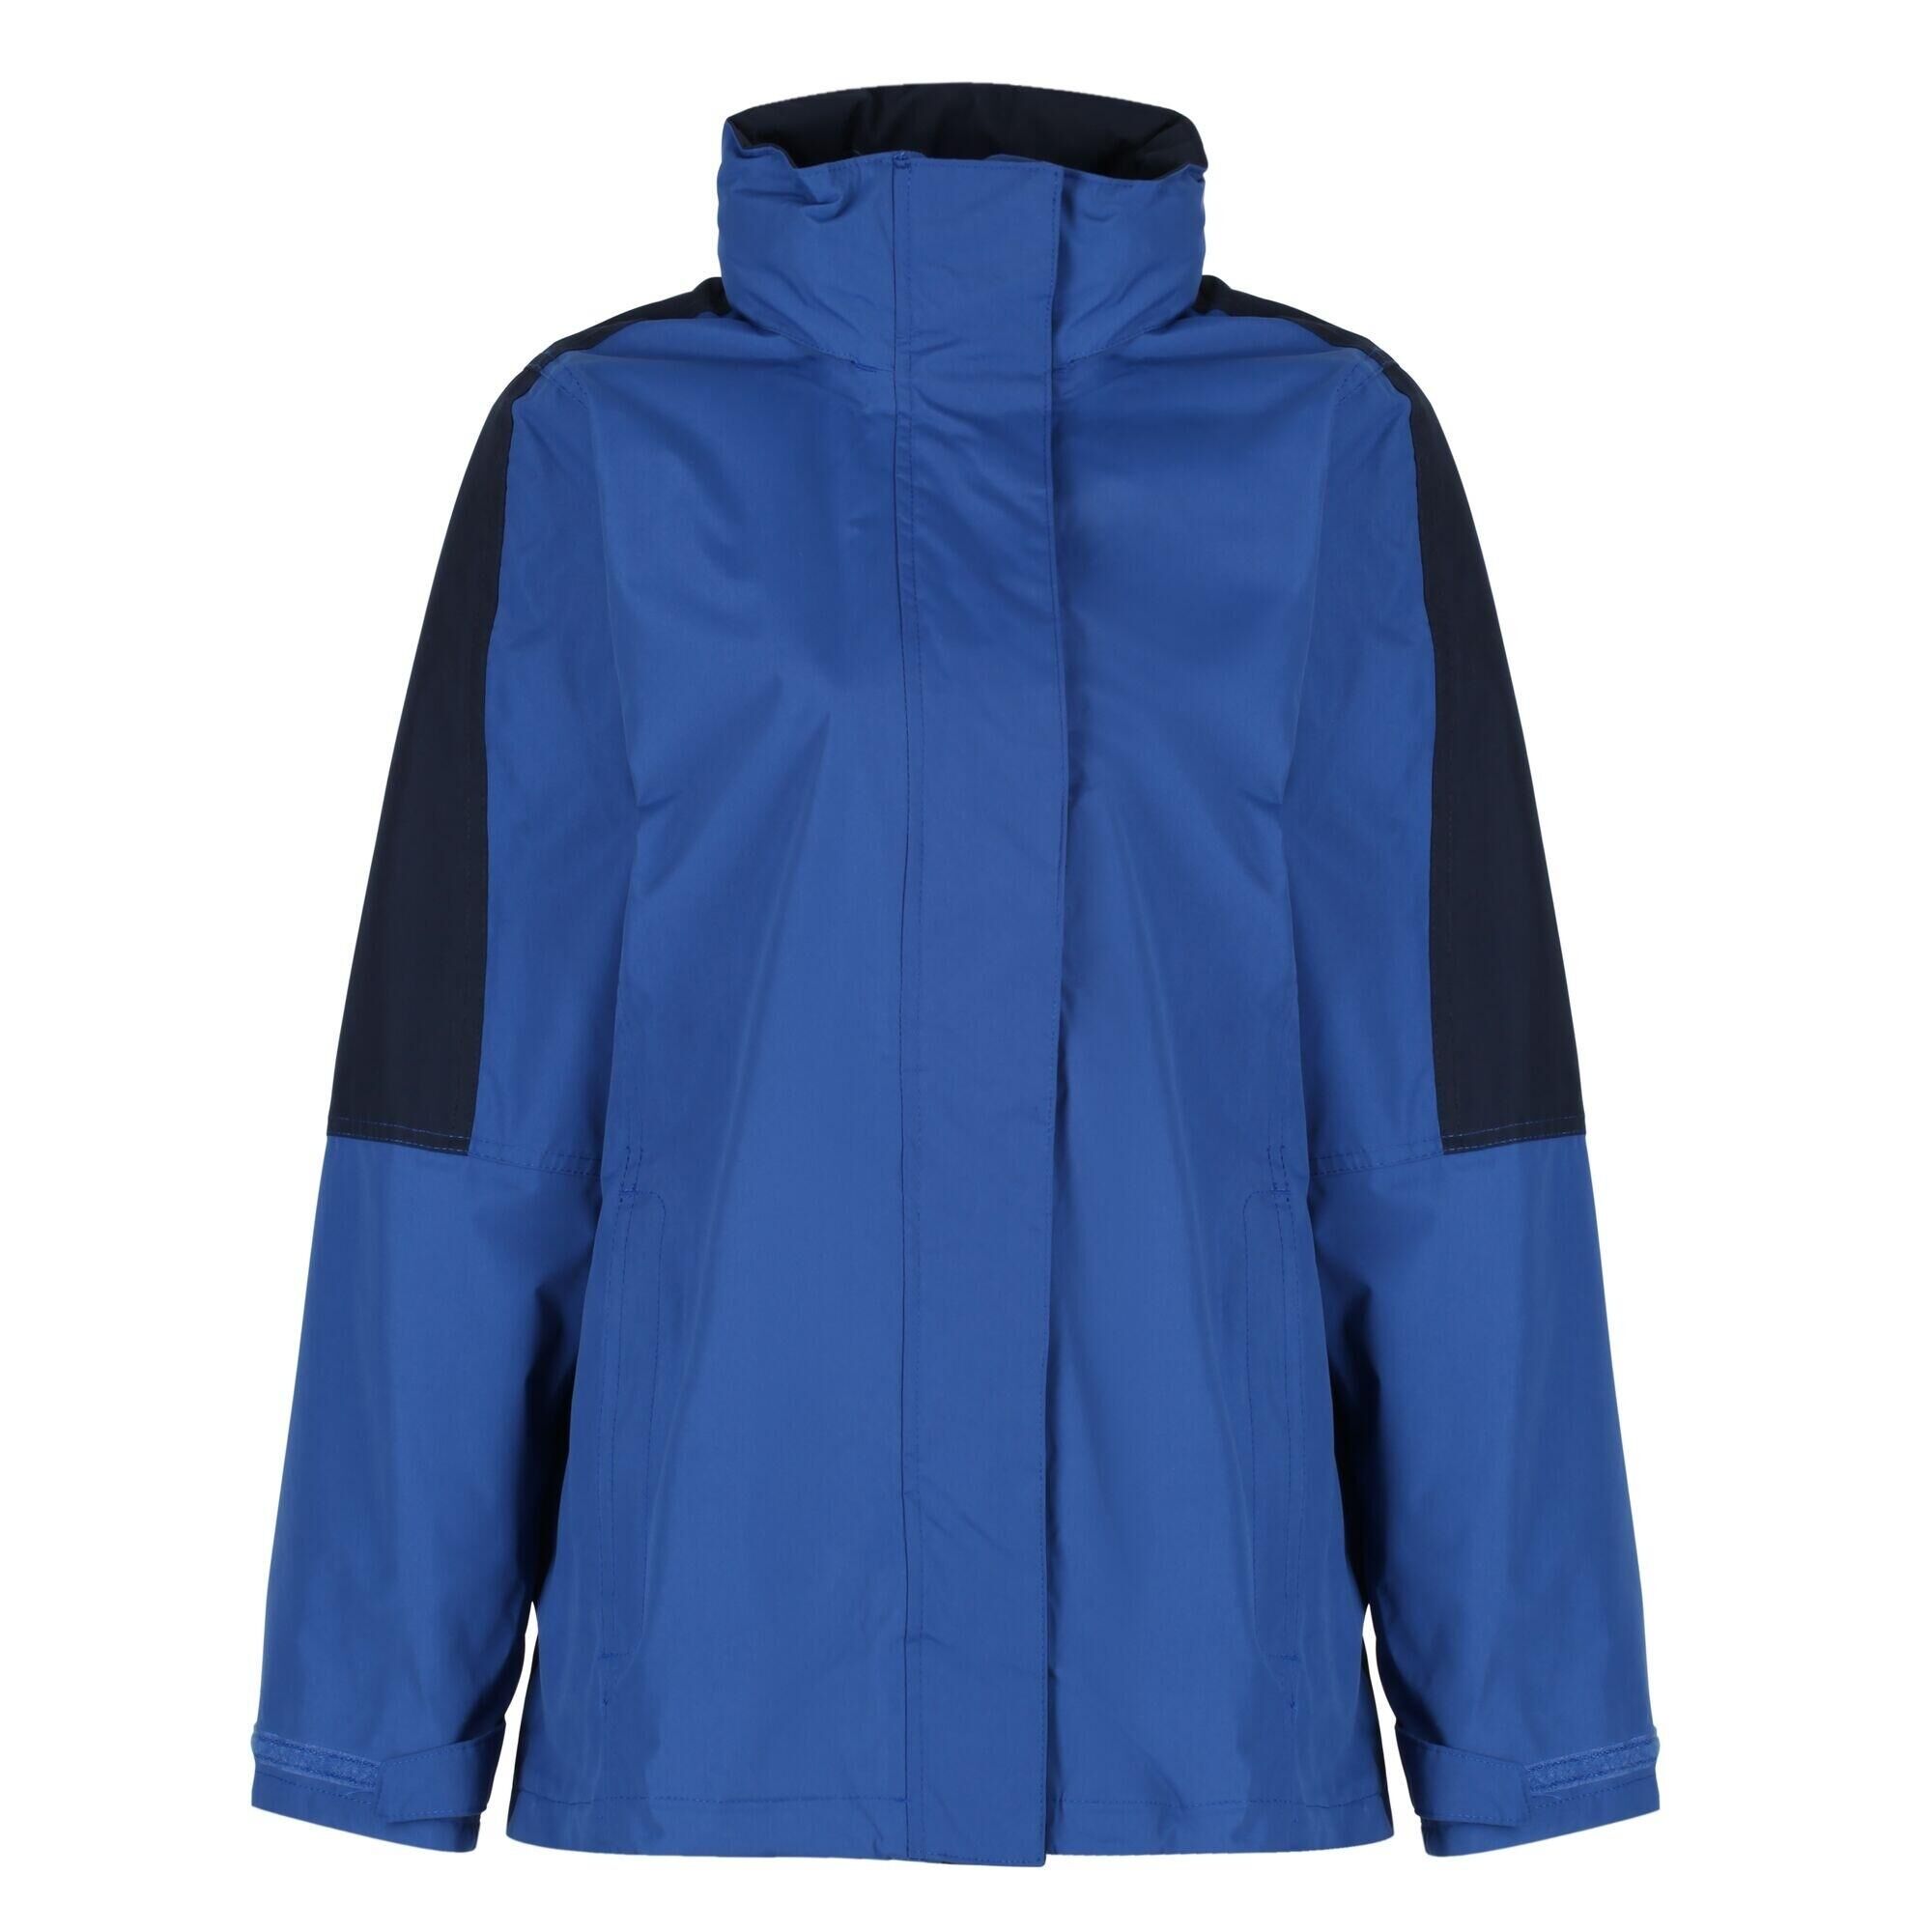 REGATTA Womens/Ladies Defender III 3In1 Jacket (Waterproof & Windproof) (Royal Blue/